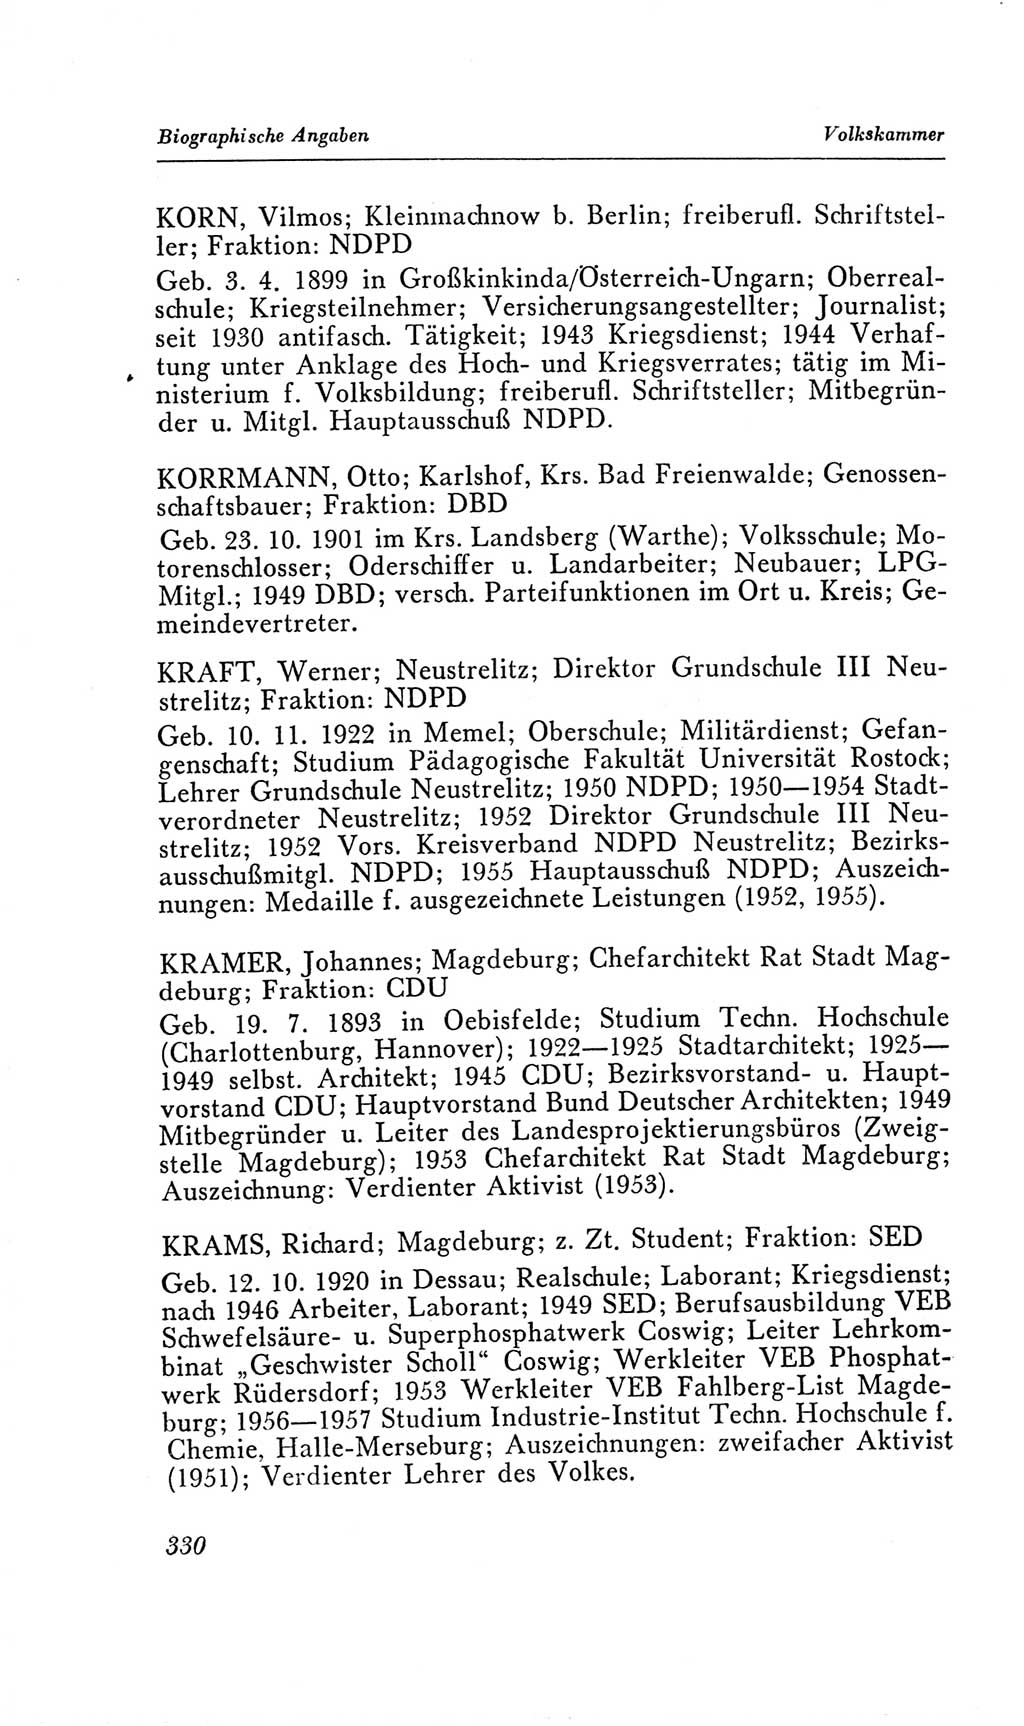 Handbuch der Volkskammer (VK) der Deutschen Demokratischen Republik (DDR), 2. Wahlperiode 1954-1958, Seite 330 (Hdb. VK. DDR, 2. WP. 1954-1958, S. 330)